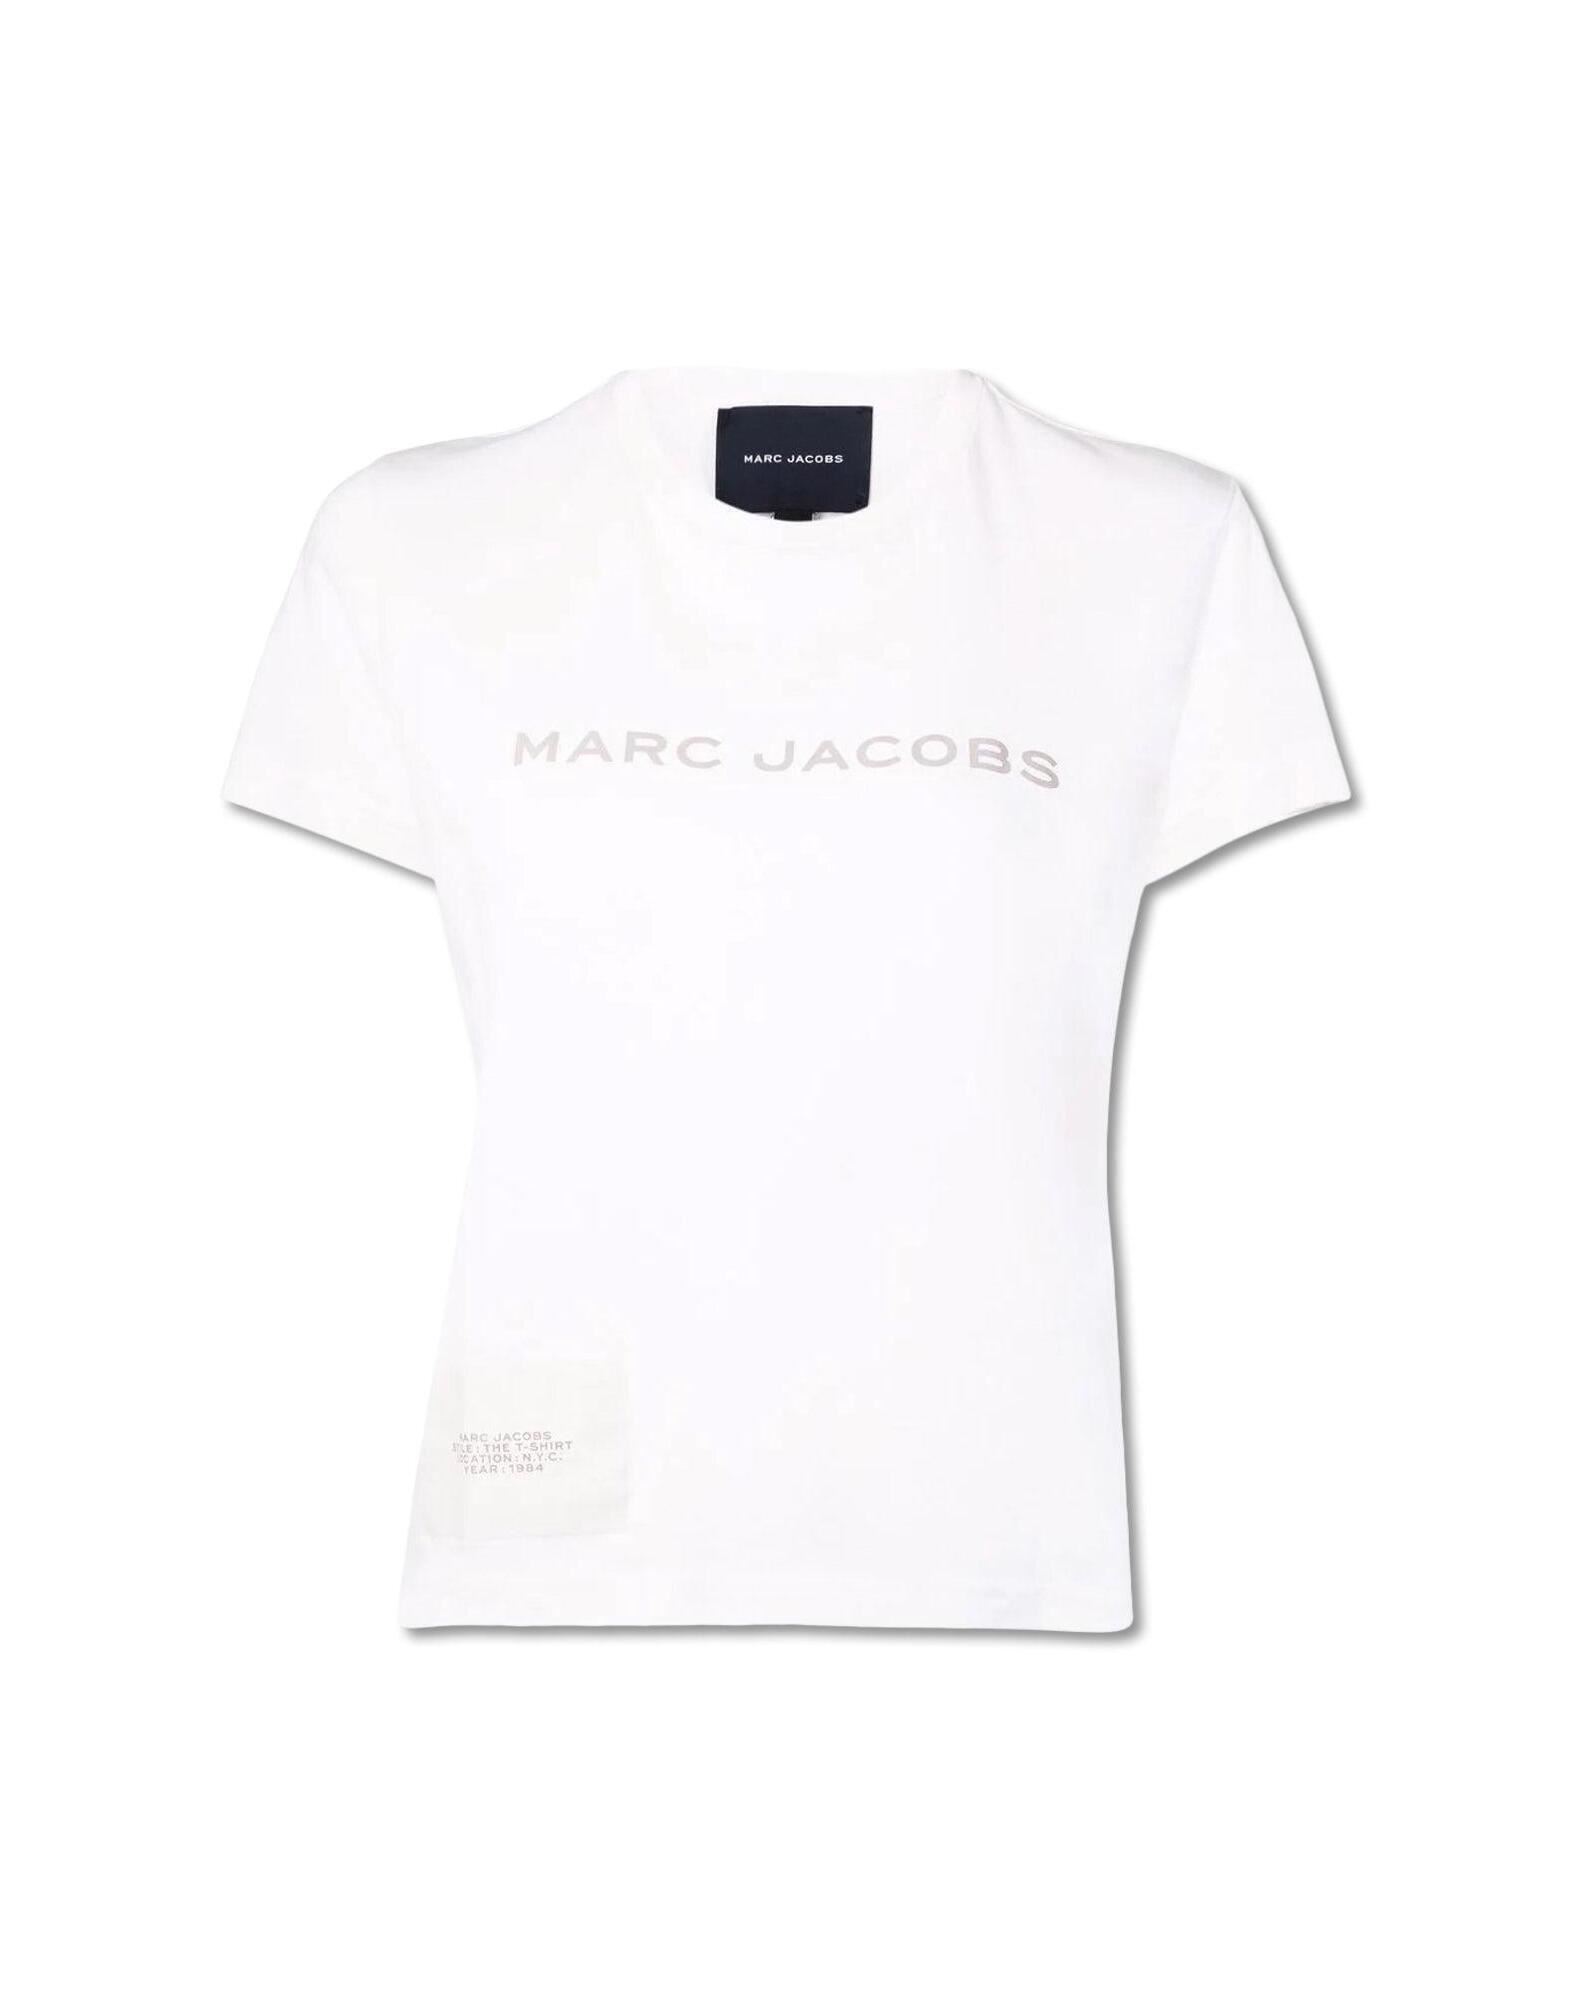 MARC JACOBS T-shirts Damen Weiß von MARC JACOBS